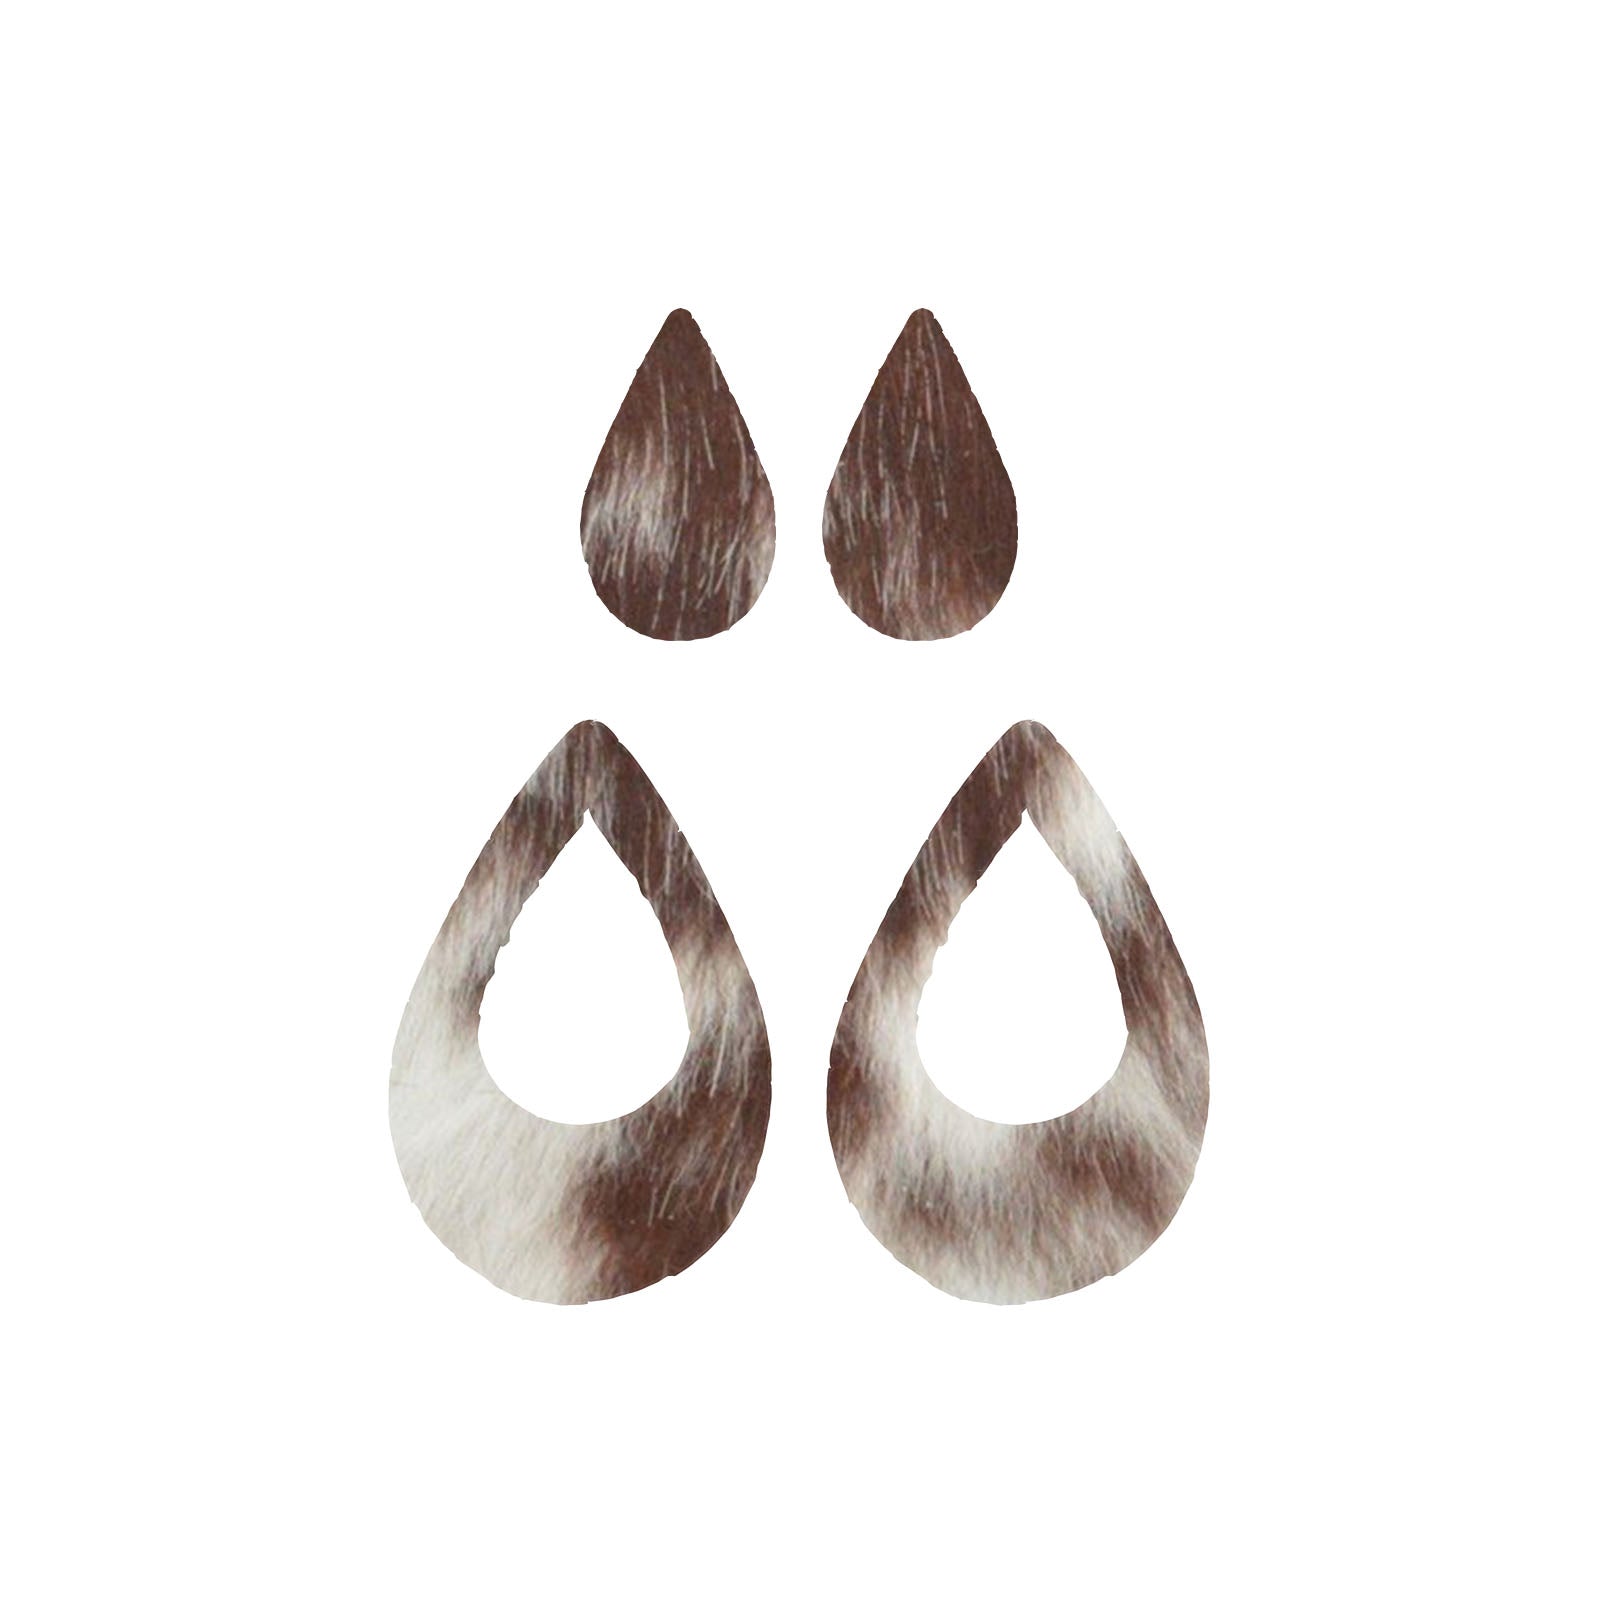 Bi-Color Medium Brown and Off-White Hair On Die Cut Earrings, Medium Teardrop Window | The Leather Guy